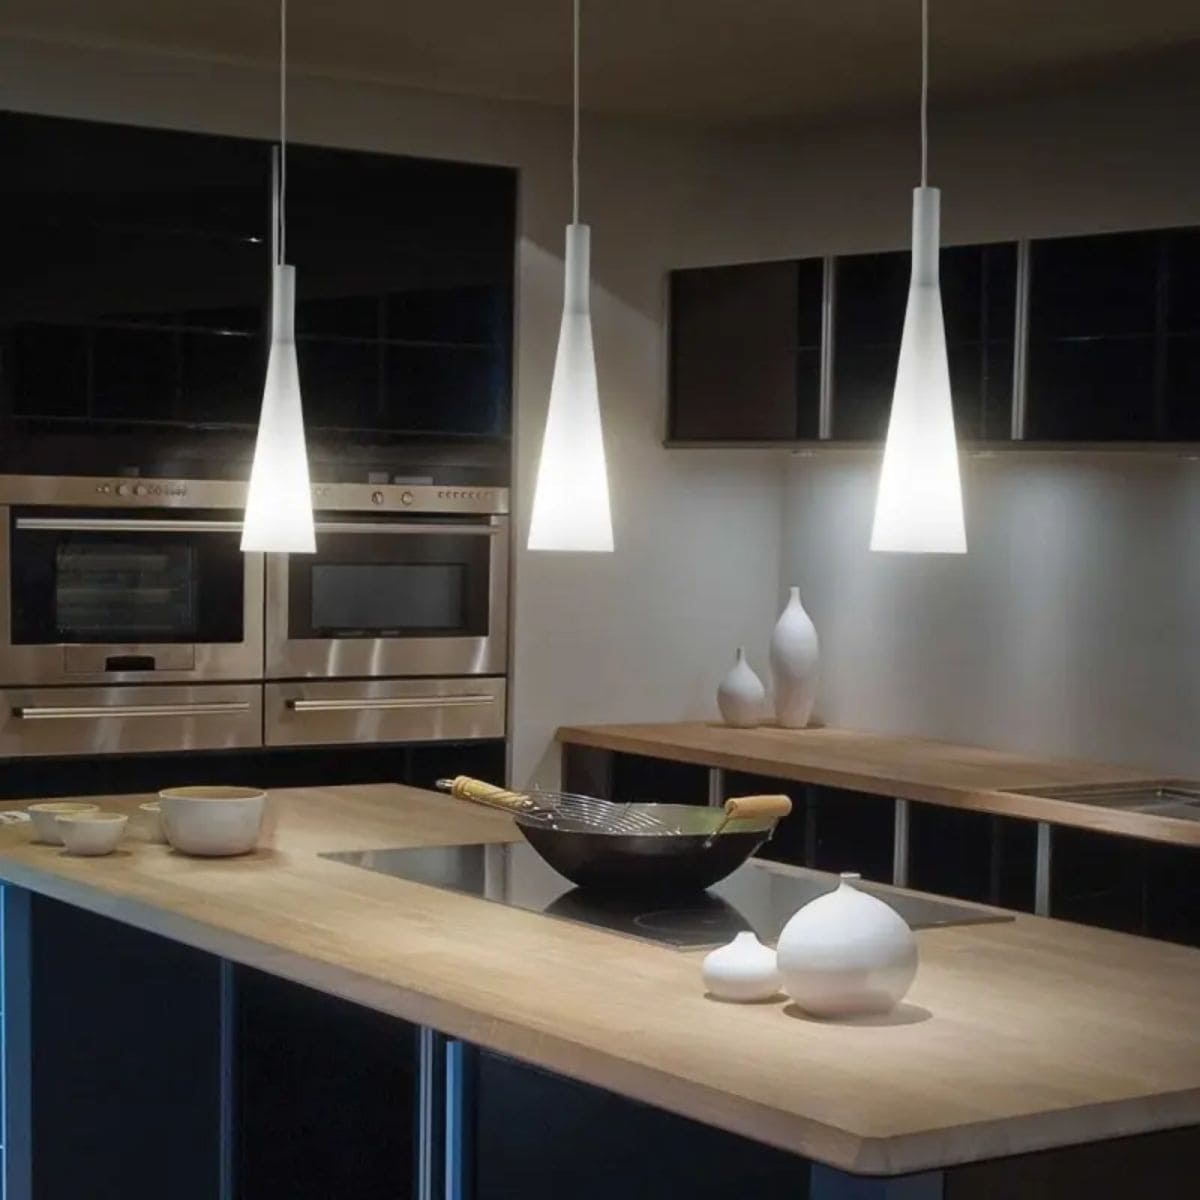 Suspension blanche dans une cuisine moderne en noir et bois, pour laisser de la lumière à son chat la nuit